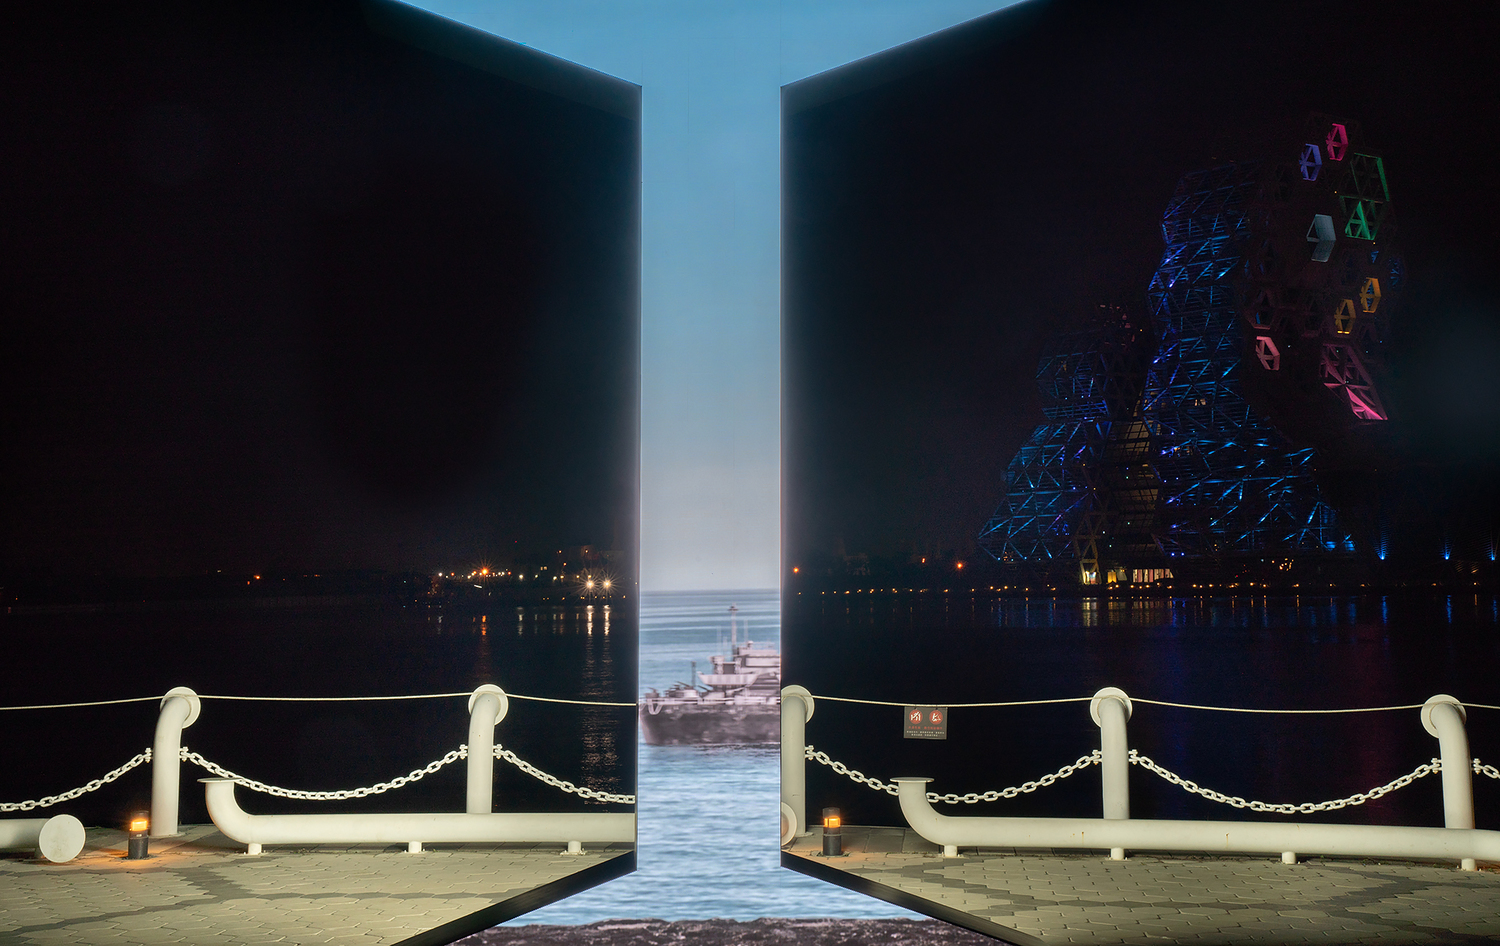 《I_光榮碼頭》如連結時空的巨大裂縫。   圖:高雄市文化局提供